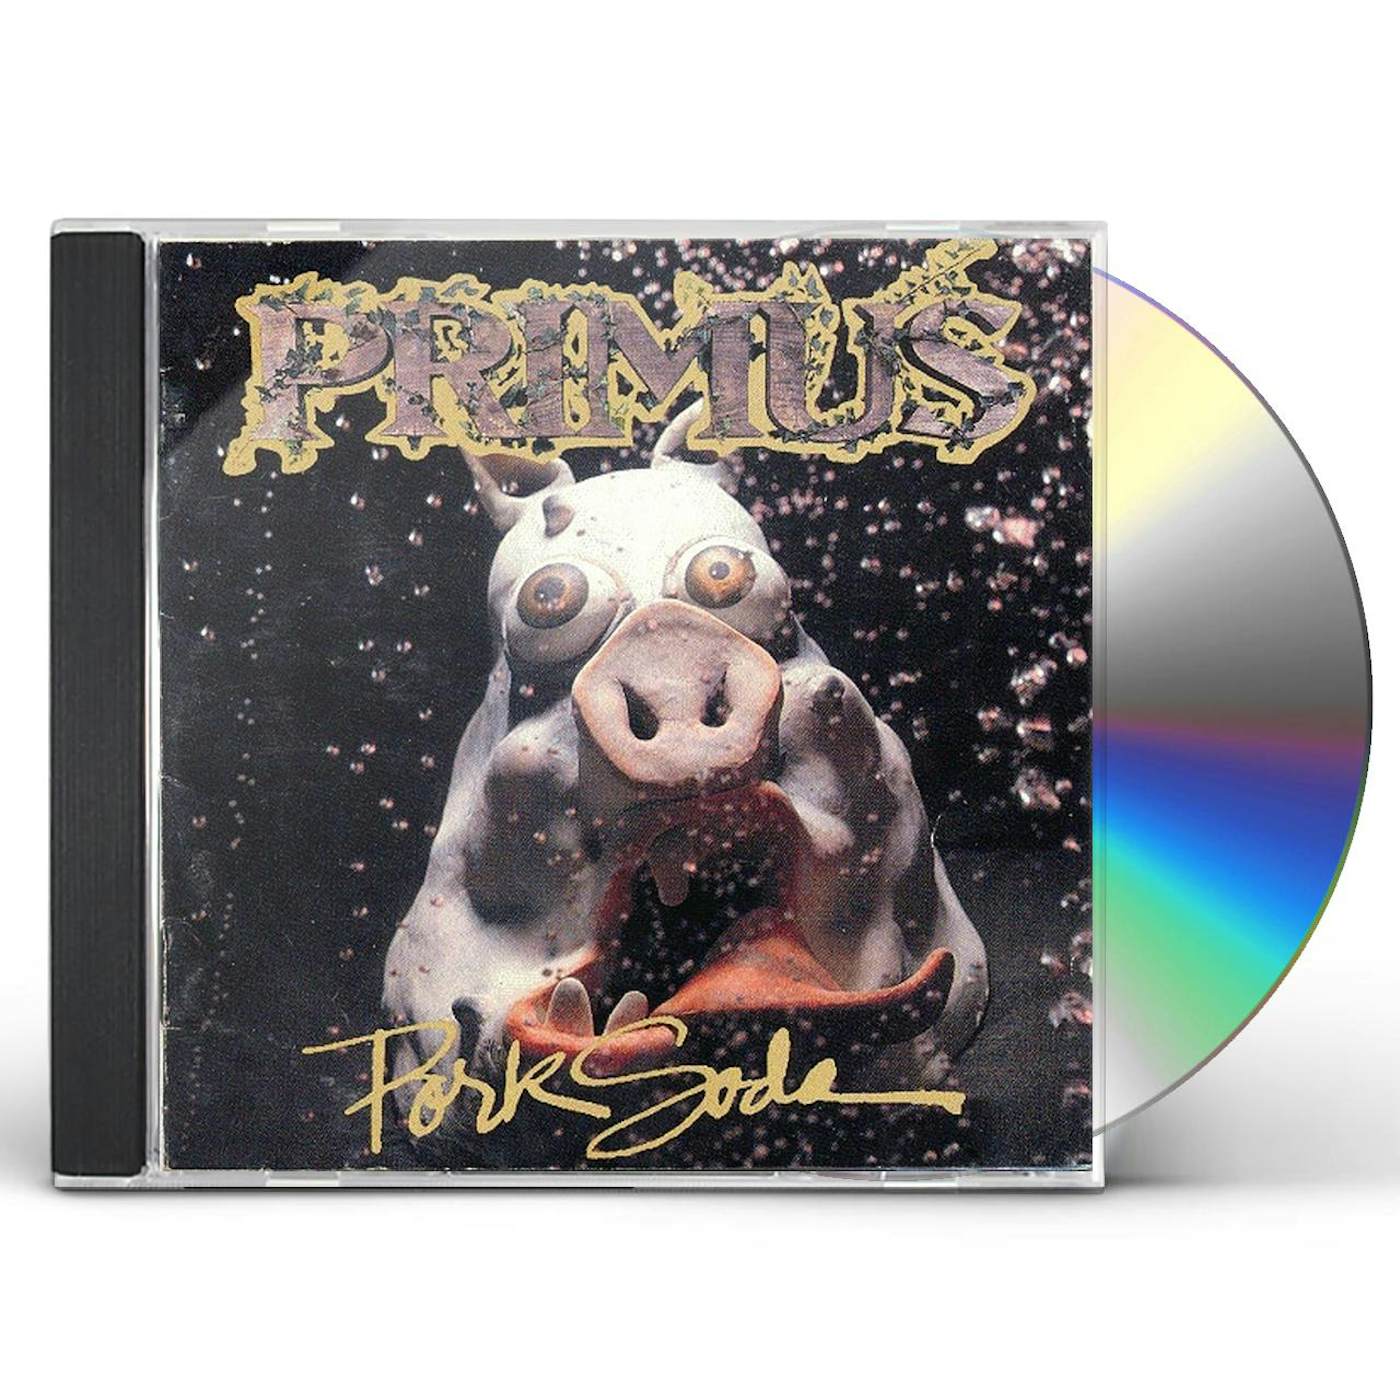 Primus PORK SODA CD